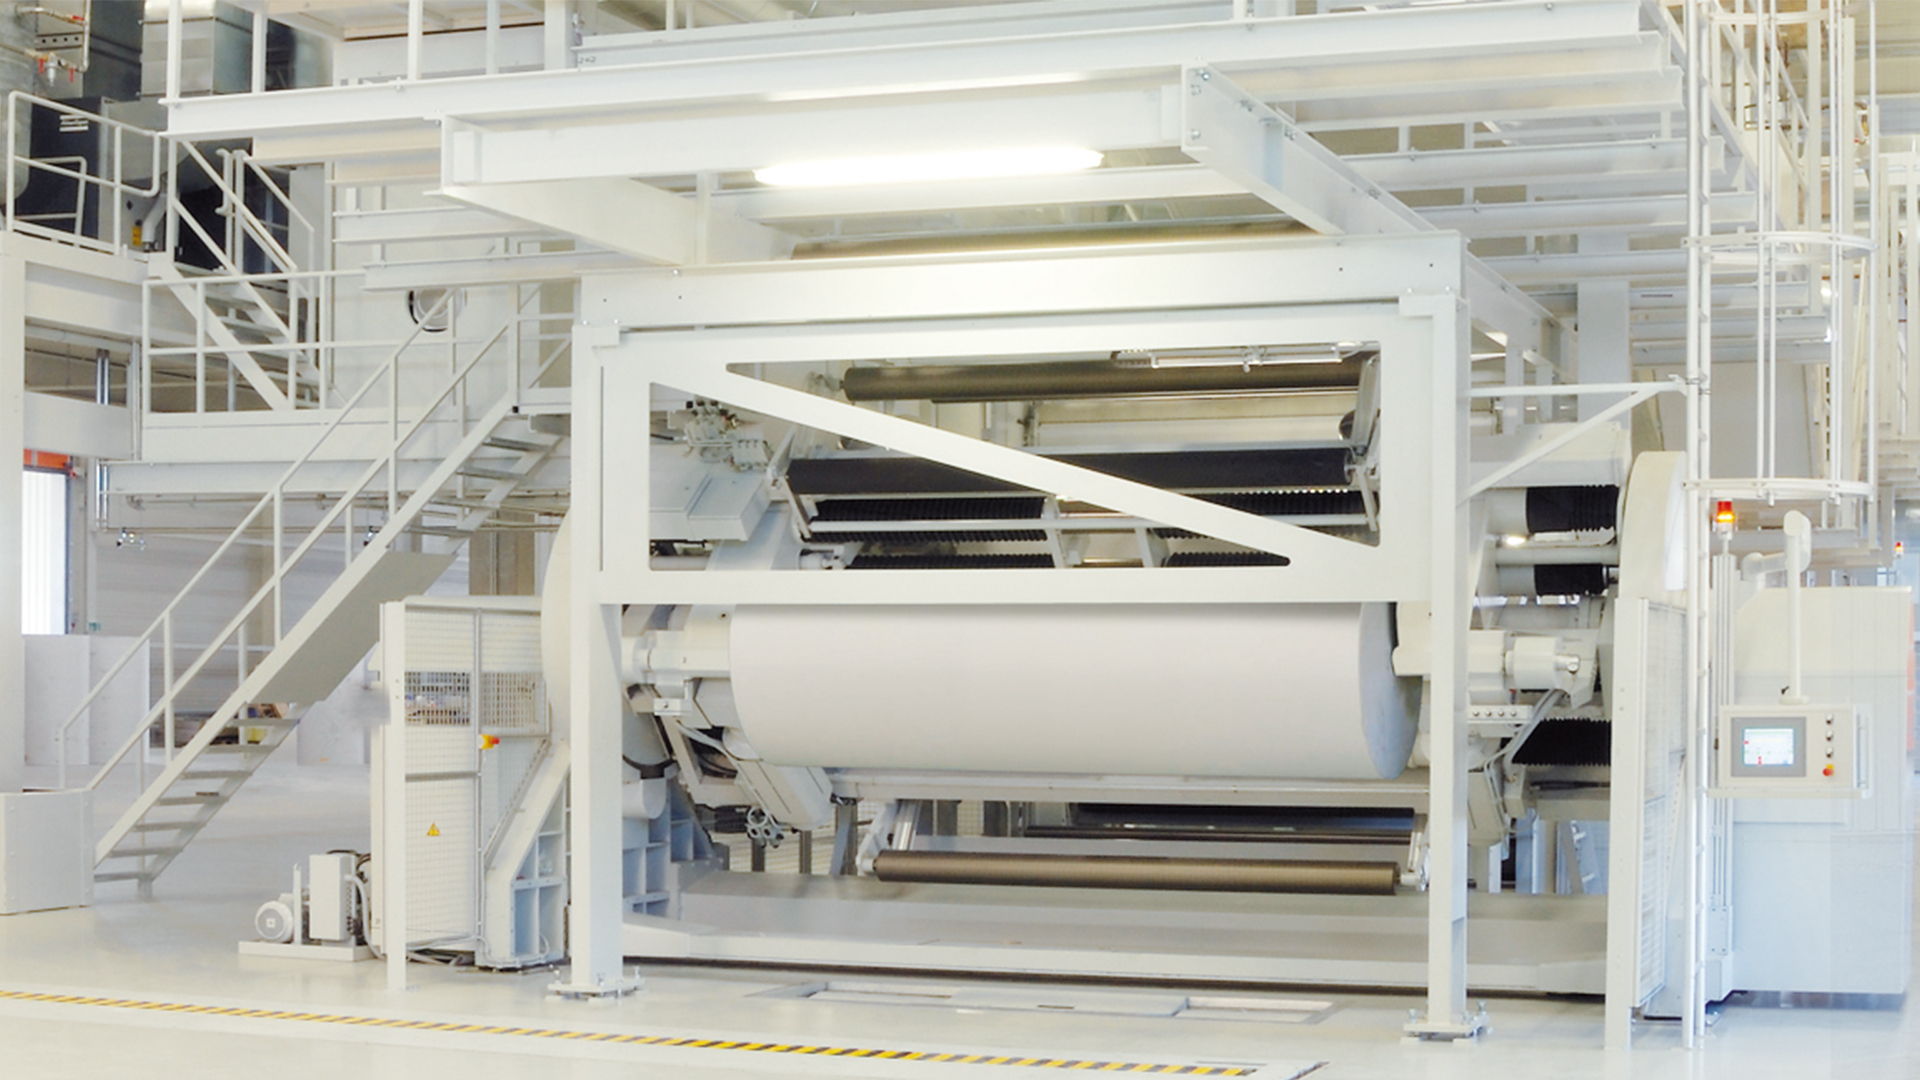 Mit seiner Zentralzylinder-Flexodruckmaschine BOBST 96S produzierte die Panther Print GmbH in Wustermark – sie gehört zur Panther-Gruppe – binnen 24 Stunden mehr als eine Millionen Quadratmeter Linerboard und stellte damit einen neuen Weltrekord auf. Das perfekte Zusammenspiel der Hochleistungsmaschine mit dem erfahrenen Team von Panther Print, den hochwertigen Verbrauchsmaterialien und dem optimierten logistischen Prozess ermöglichte dabei einzigartige Produktionsdaten von durchschnittlich 489 m/min und 48.917 m2/h.